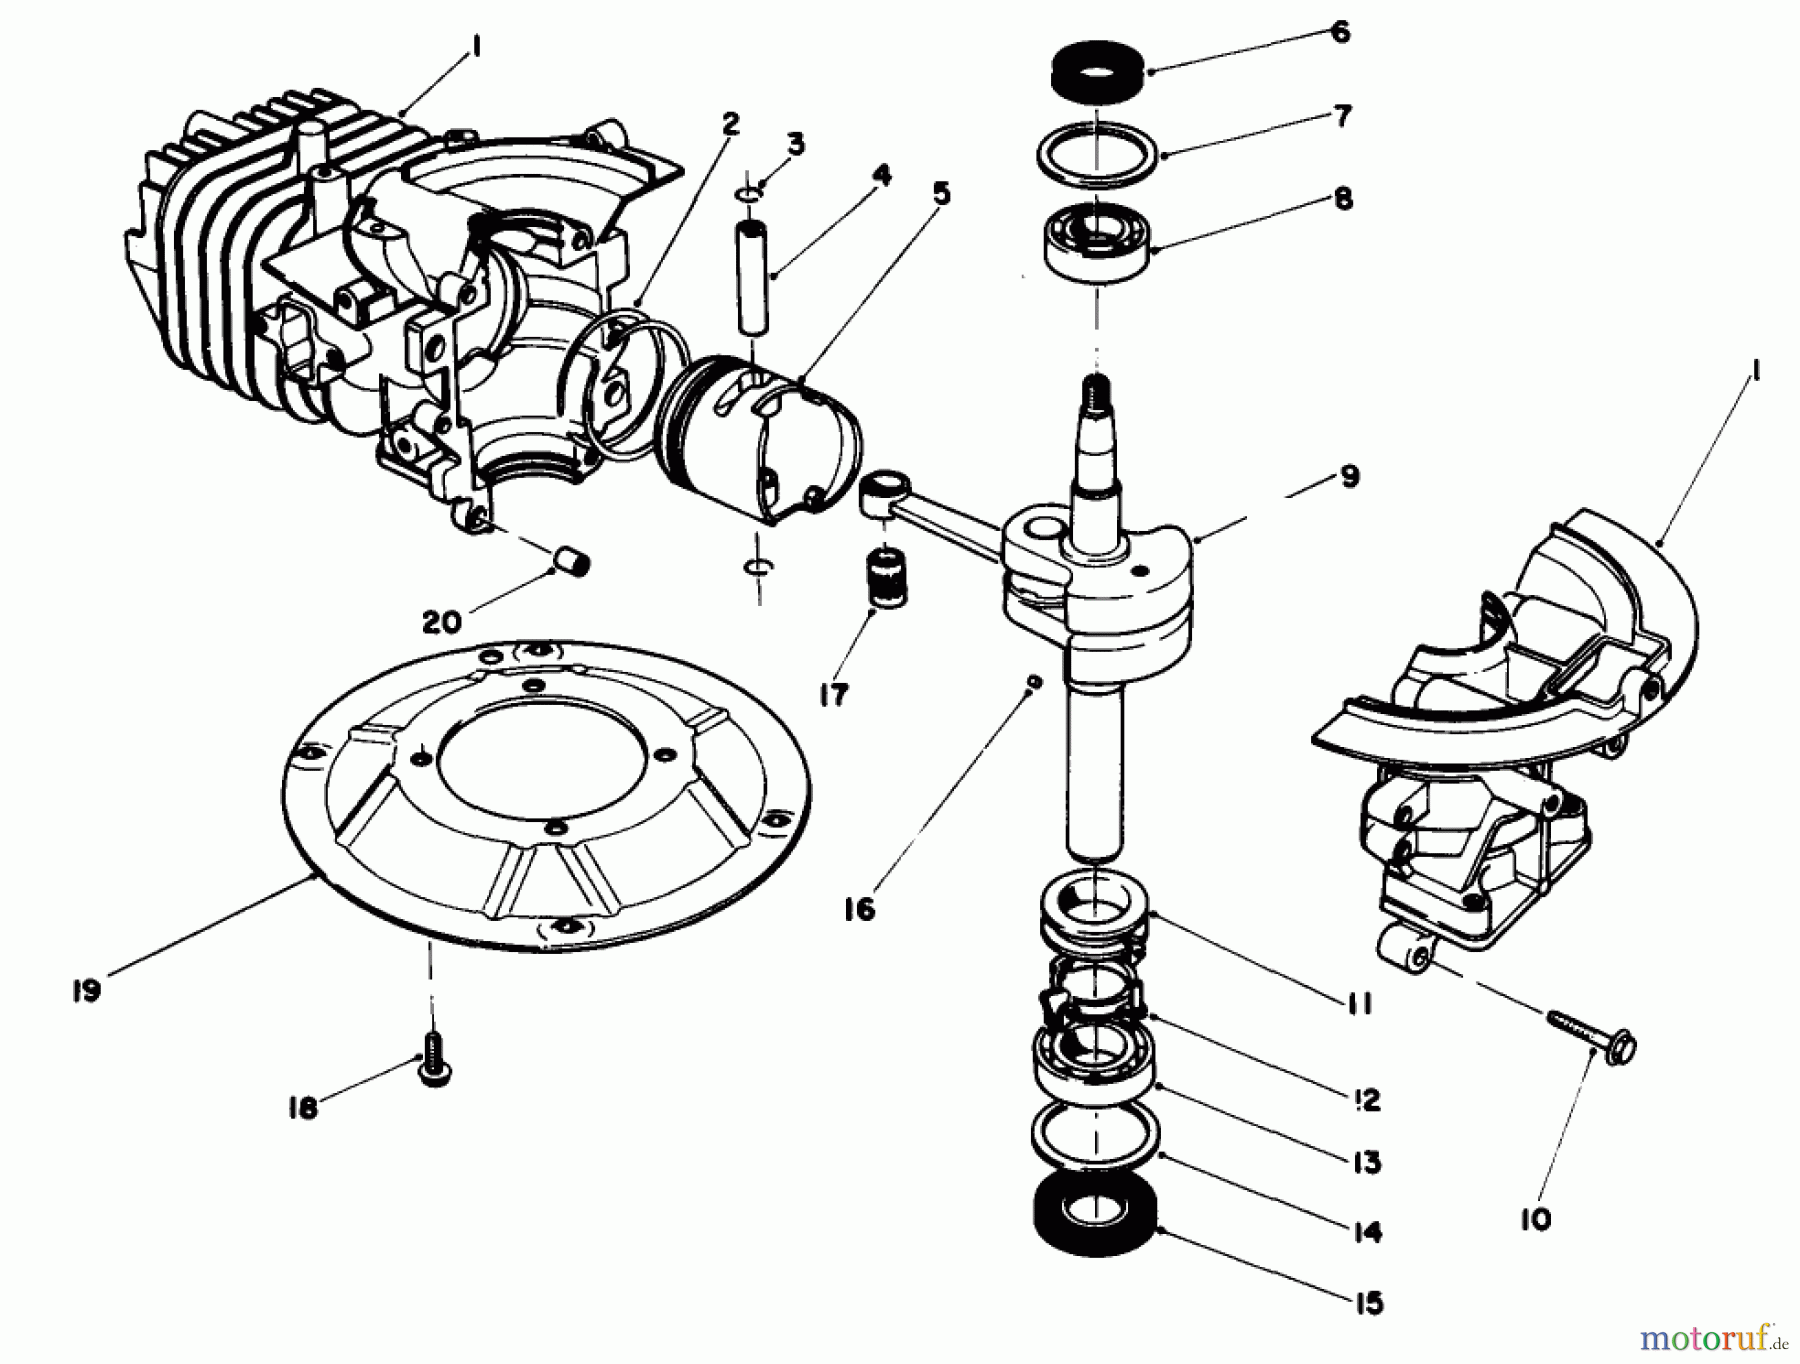  Toro Neu Mowers, Walk-Behind Seite 2 22030 - Toro Lawnmower, 1988 (8000001-8999999) ENGINE ASSEMBLY MODEL NO. 47PH7 #1